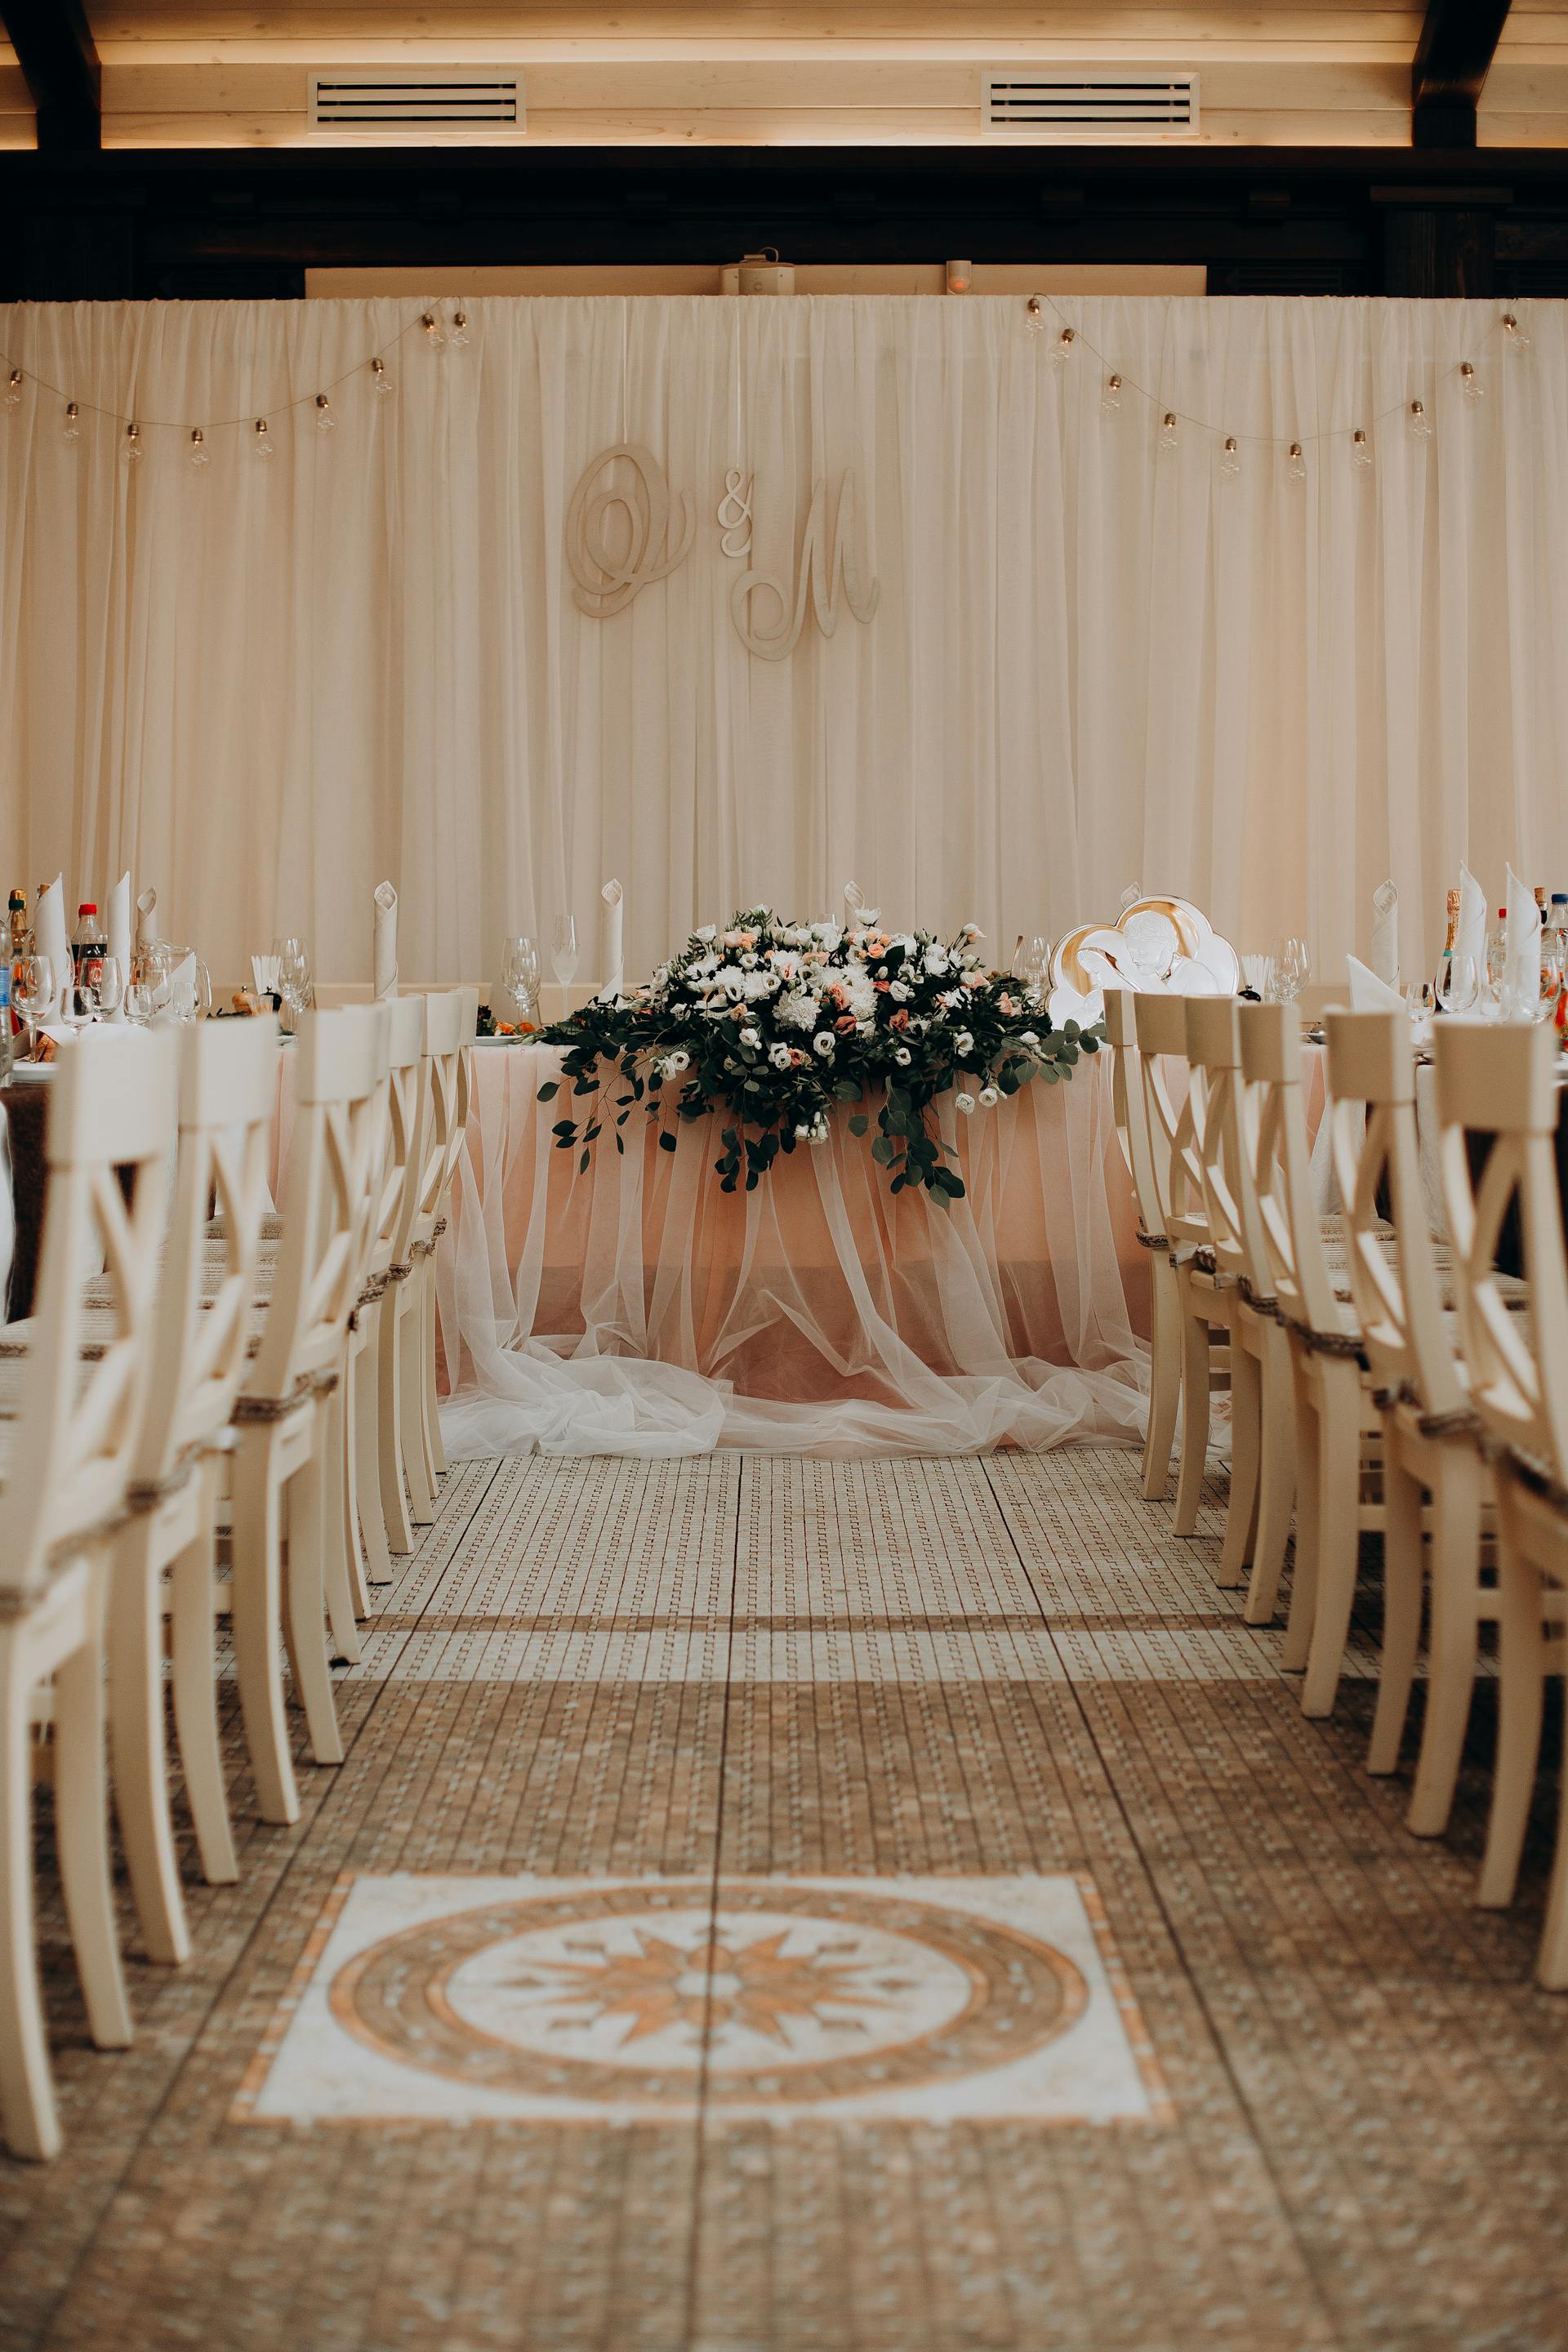 Salón de bodas | Fuente: Pexels